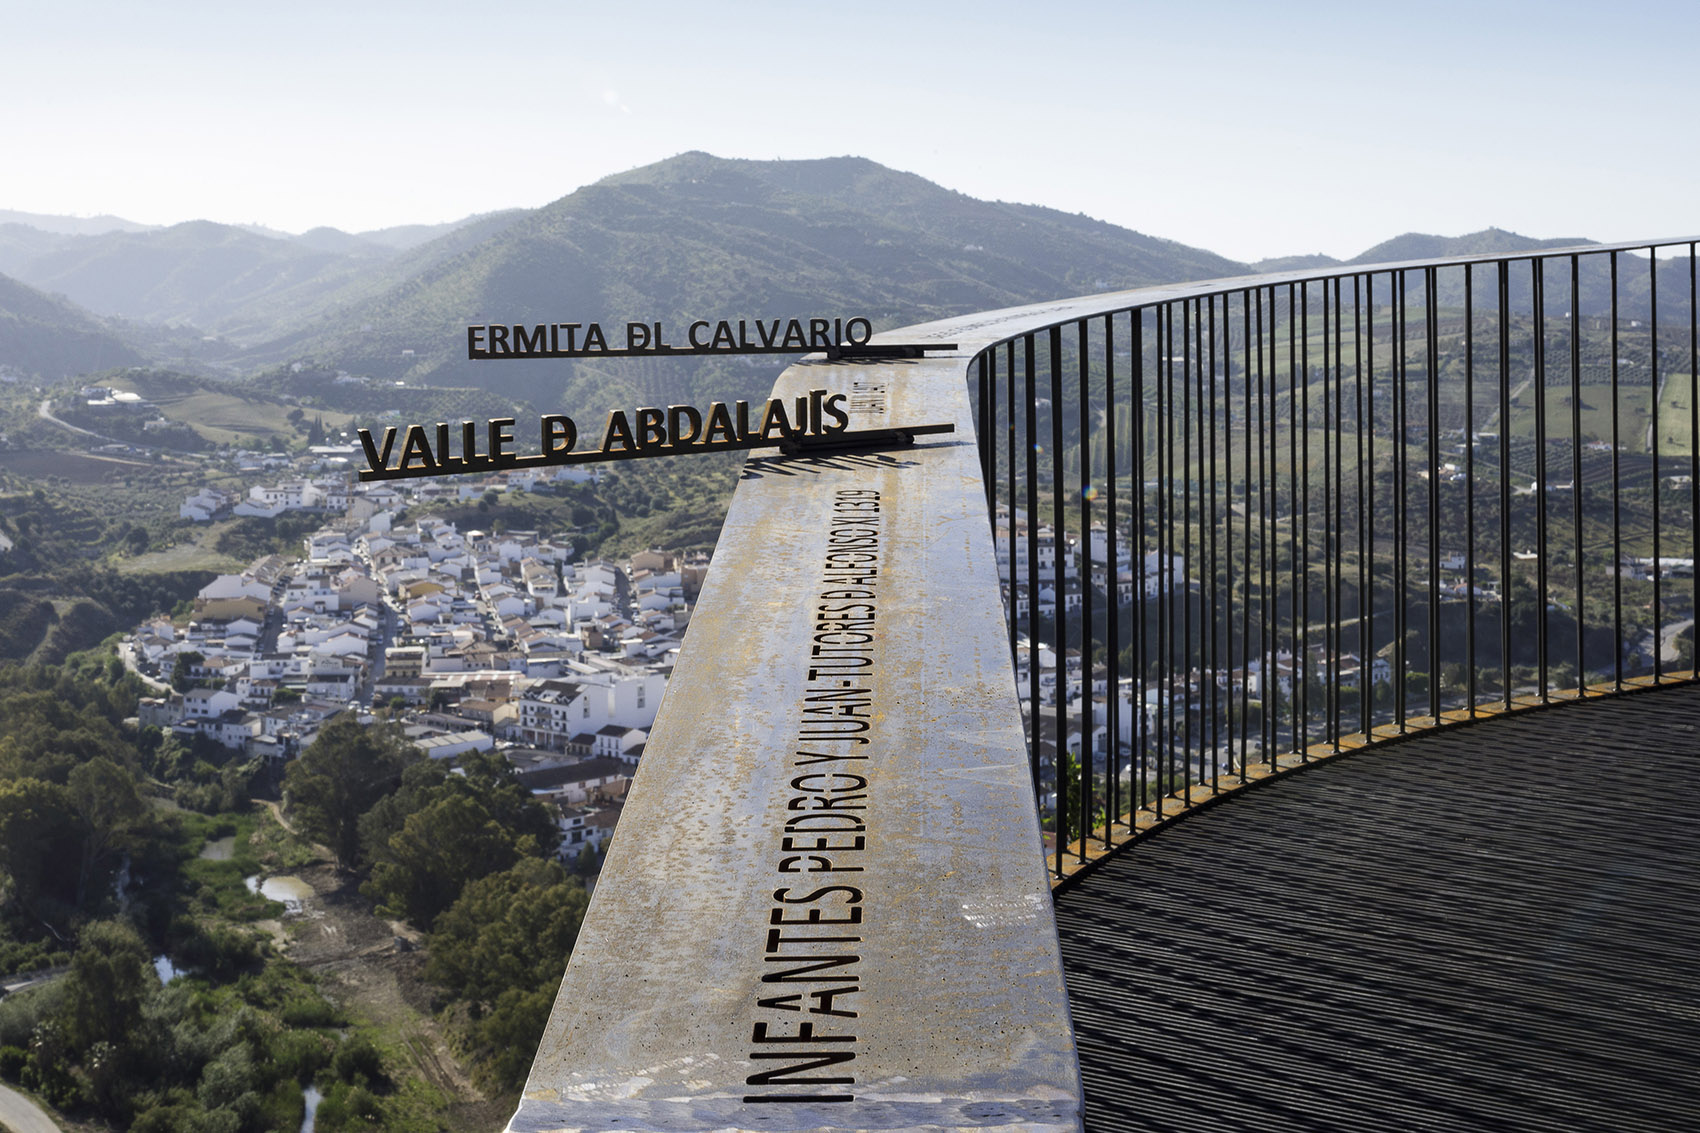 360º观景台，西班牙/捕捉蕴藏在文化景观中的能量-89